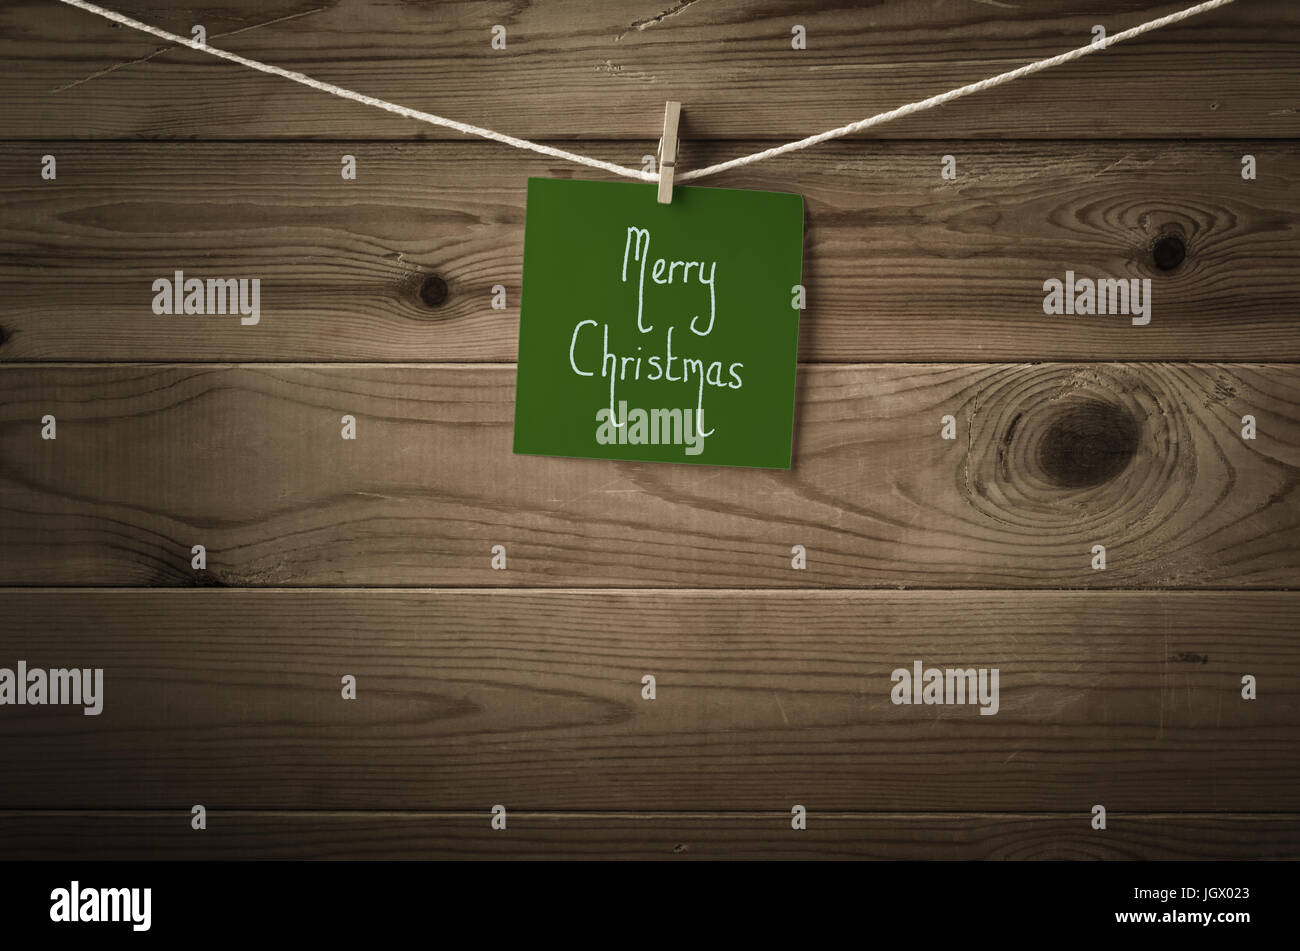 Feliz Navidad mensaje escrito sobre un cuadrado de papel nota verde oscuro festiva y vinculada a una cadena de línea de lavado, valla de madera de fondo. Retro Foto de stock